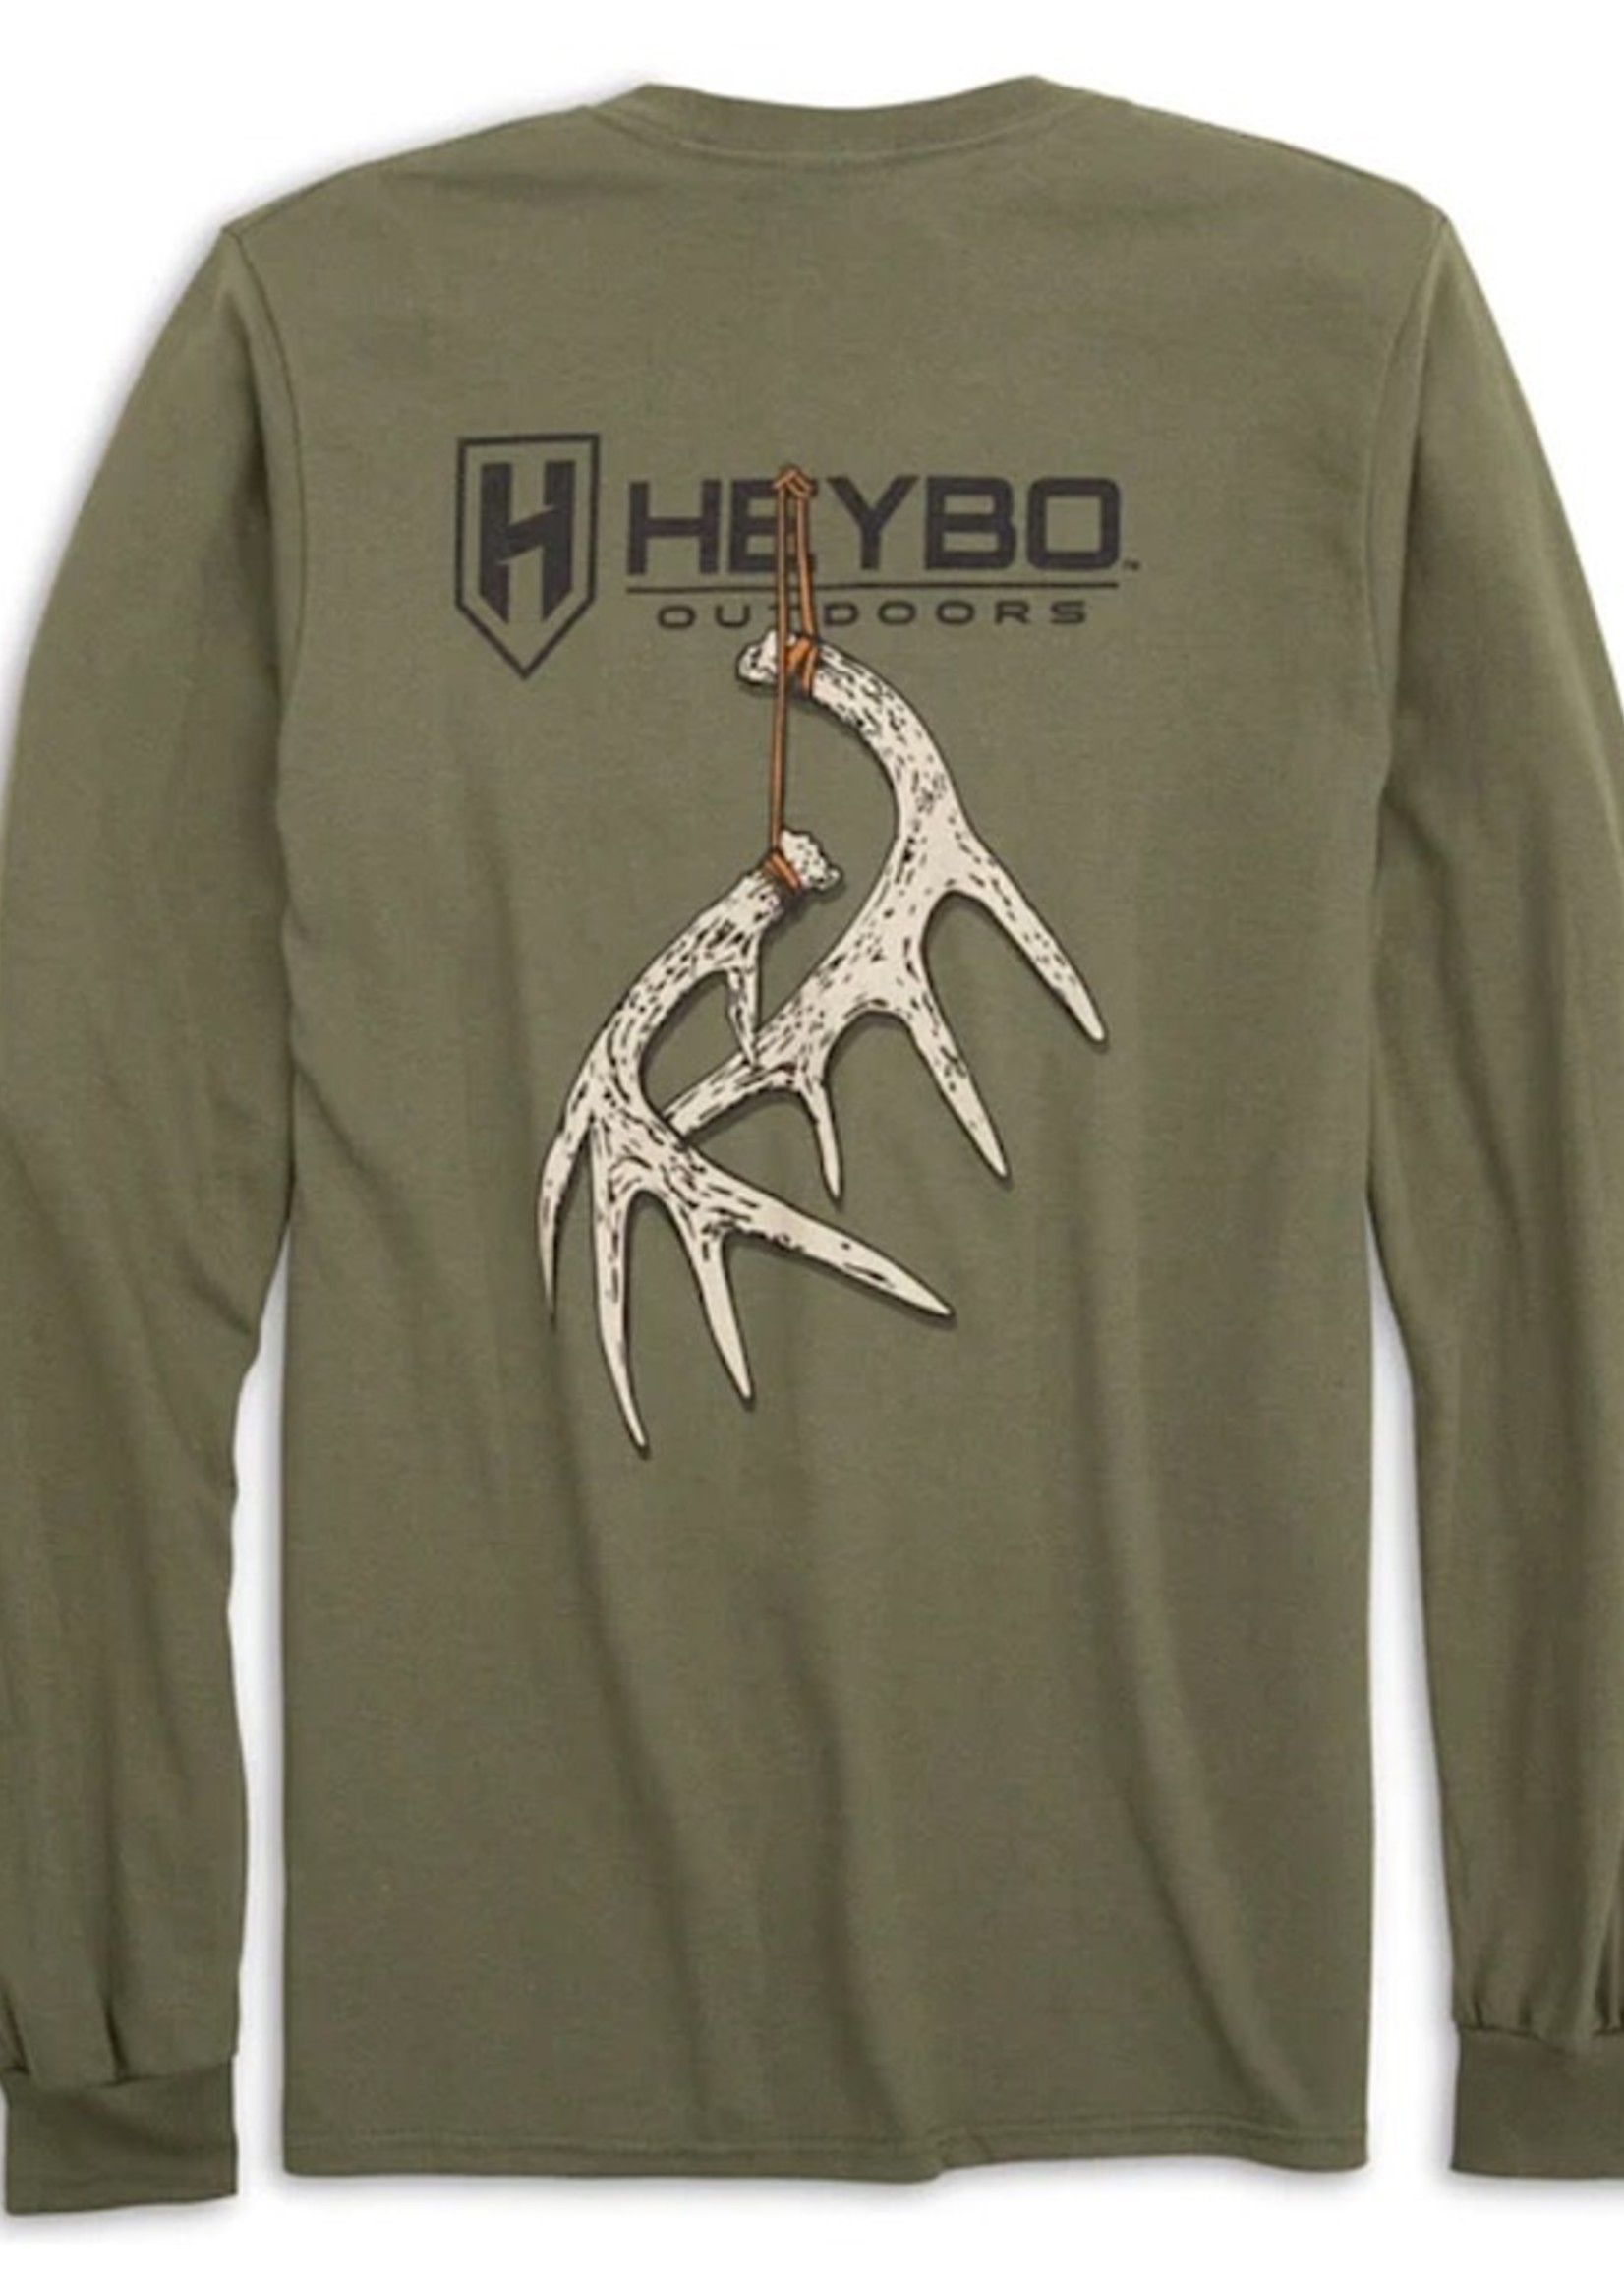 HEYBO Outdoors HeyBo Graphic Tees Hanging Antlers Moss